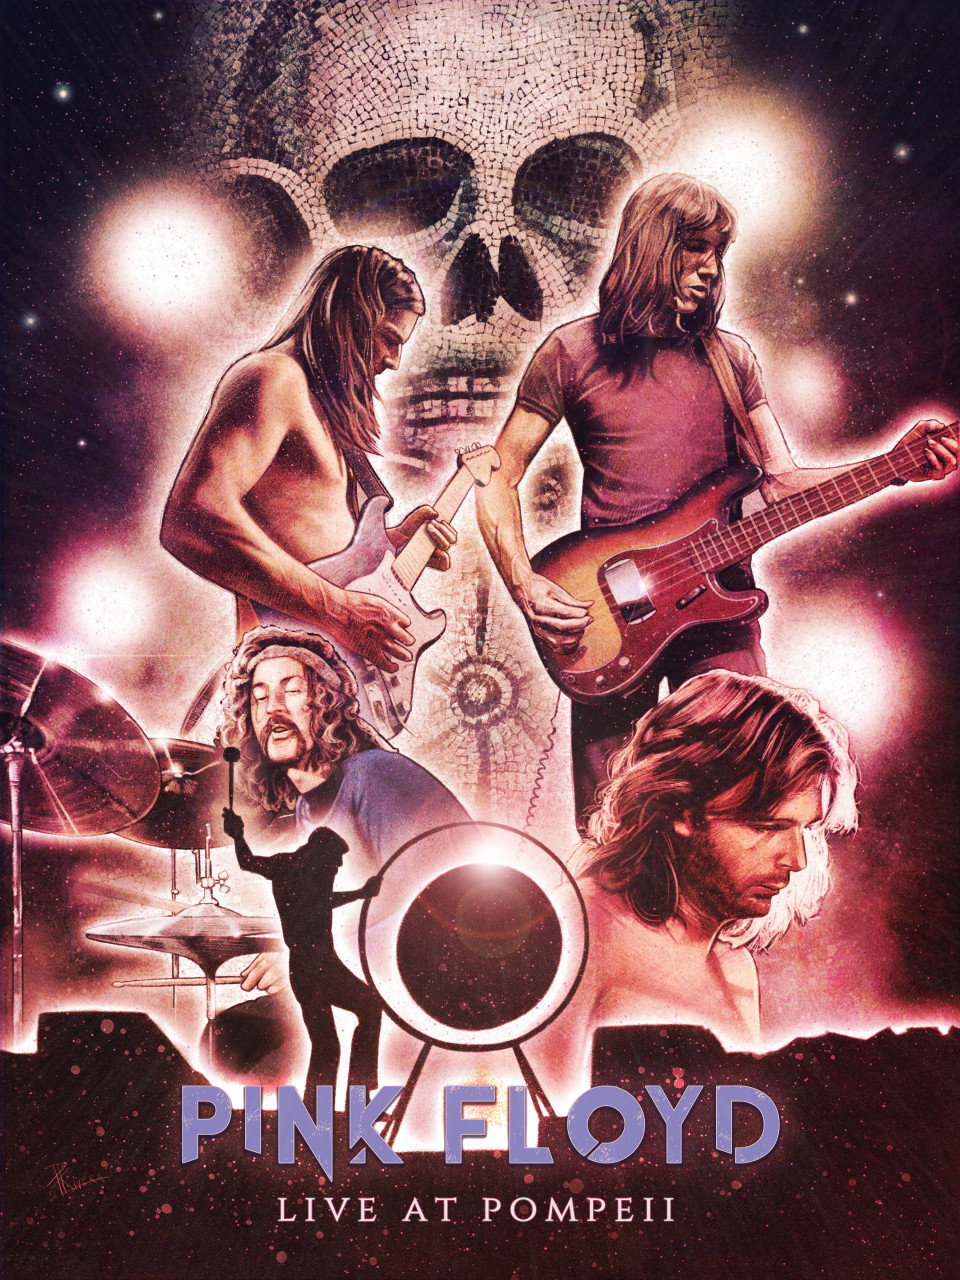 Pink Floyd Live at Pompeii Póster De Pared Metal Retro Placa Cartel Cartel De Chapa Vintage Placas Decorativas Poster por Café Bar Garaje Salón Dormitorio 